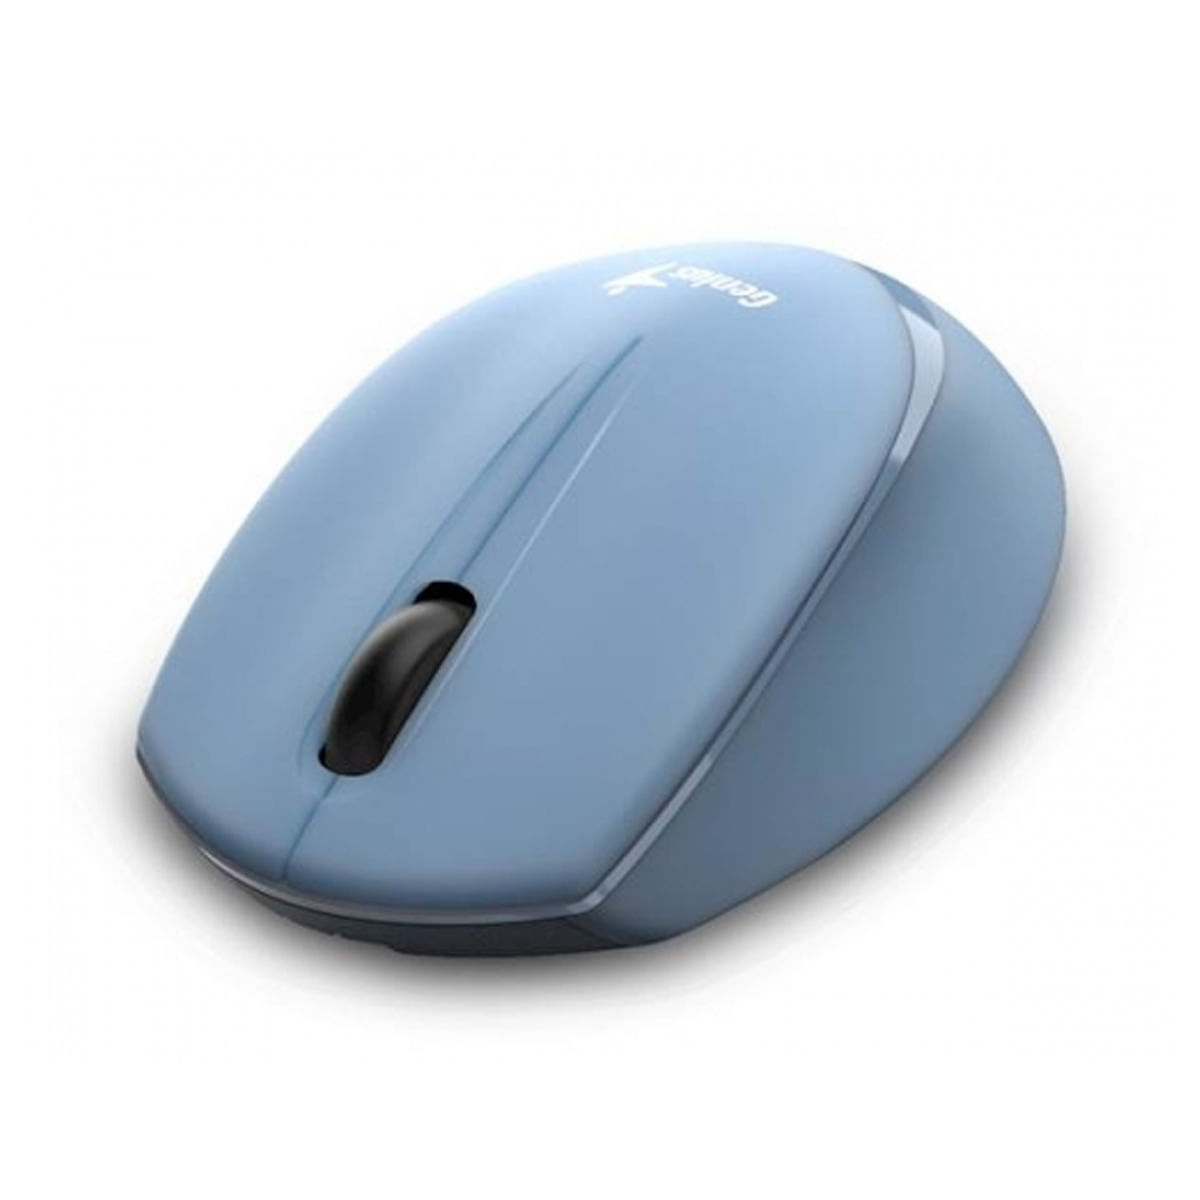 Mouse Genius Nx-7009 Wireless Blueeye Ergonomico Blue Grey